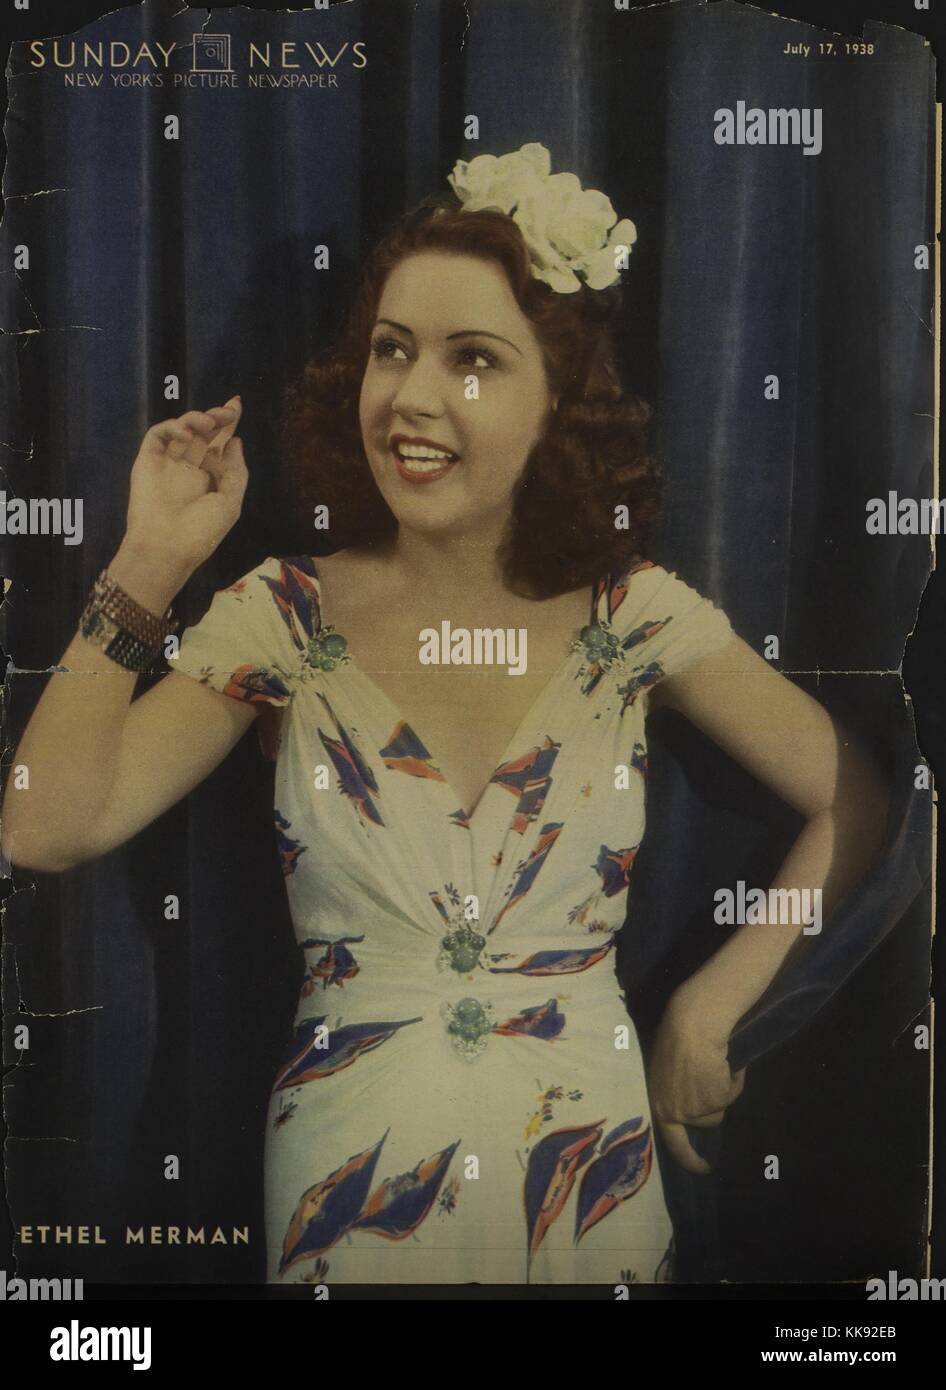 Ethel Merman, actriz y cantante estadounidense, conocida principalmente por su voz y papeles en teatro musical, vistiendo un vestido blanco con morado motivo floral, sobre la tapa del New York Sunday News, 1938. Desde la Biblioteca Pública de Nueva York. Foto de stock